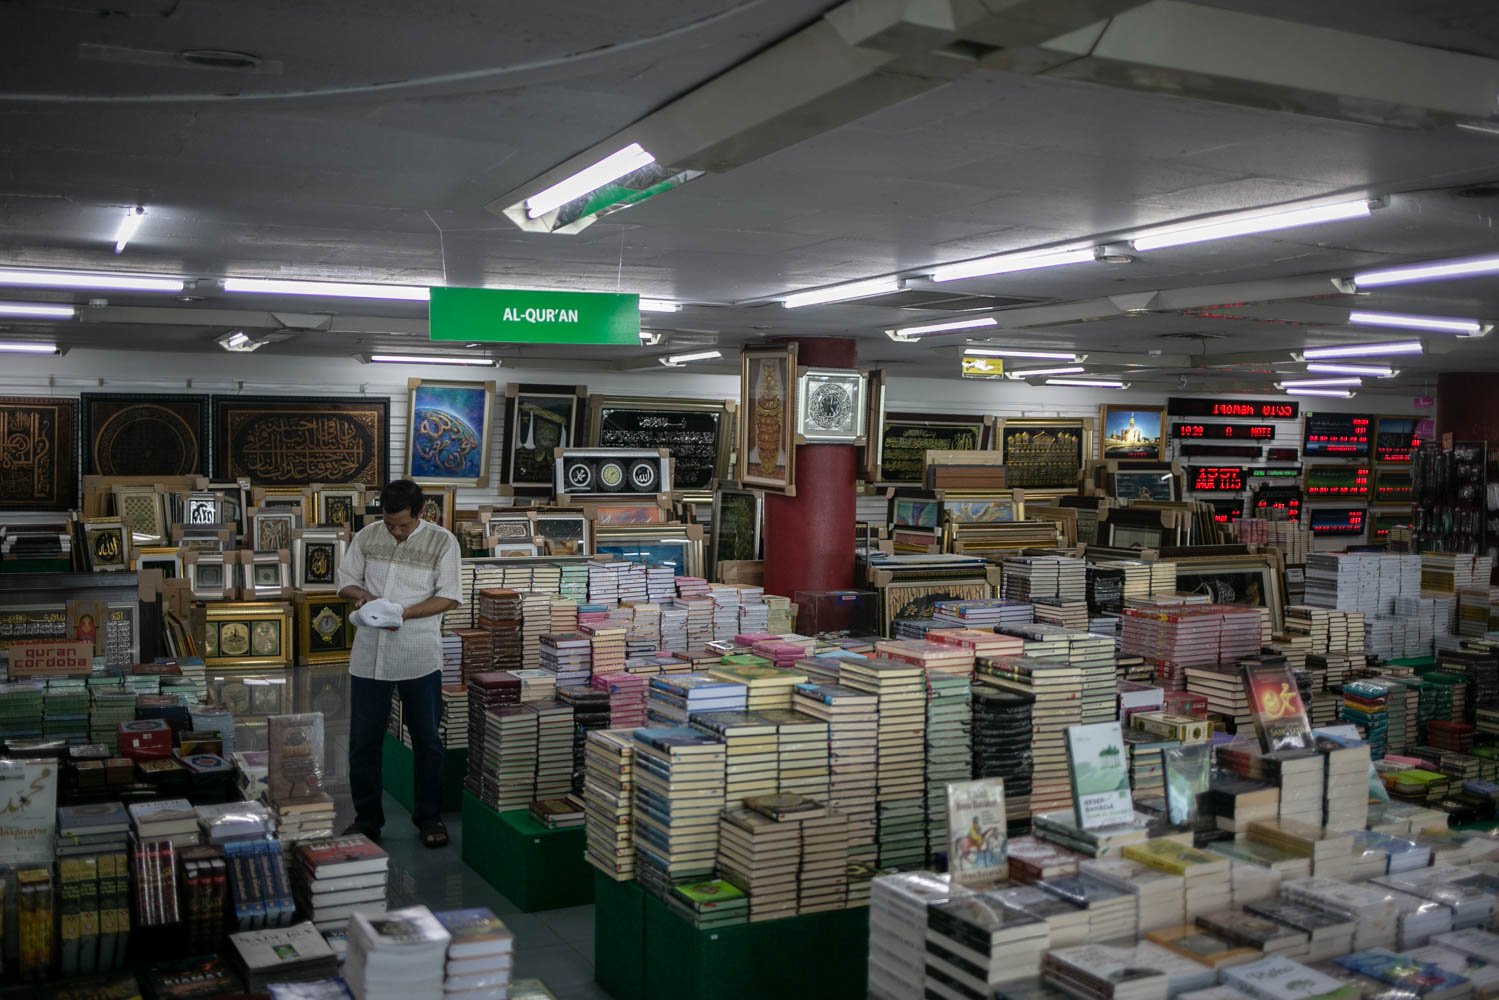 Calon pembeli memilah buku di Toko Buku Gunung Agung Kwitang, Jakarta, Senin (22/5). Toko Buku Gunung Agung akan menutup seluruh cabangnya pada akhir 2023. Keputusan tersebut dilakukan setelah mengalami kerugian yang semakin besar sejak pandemi Covid-19.